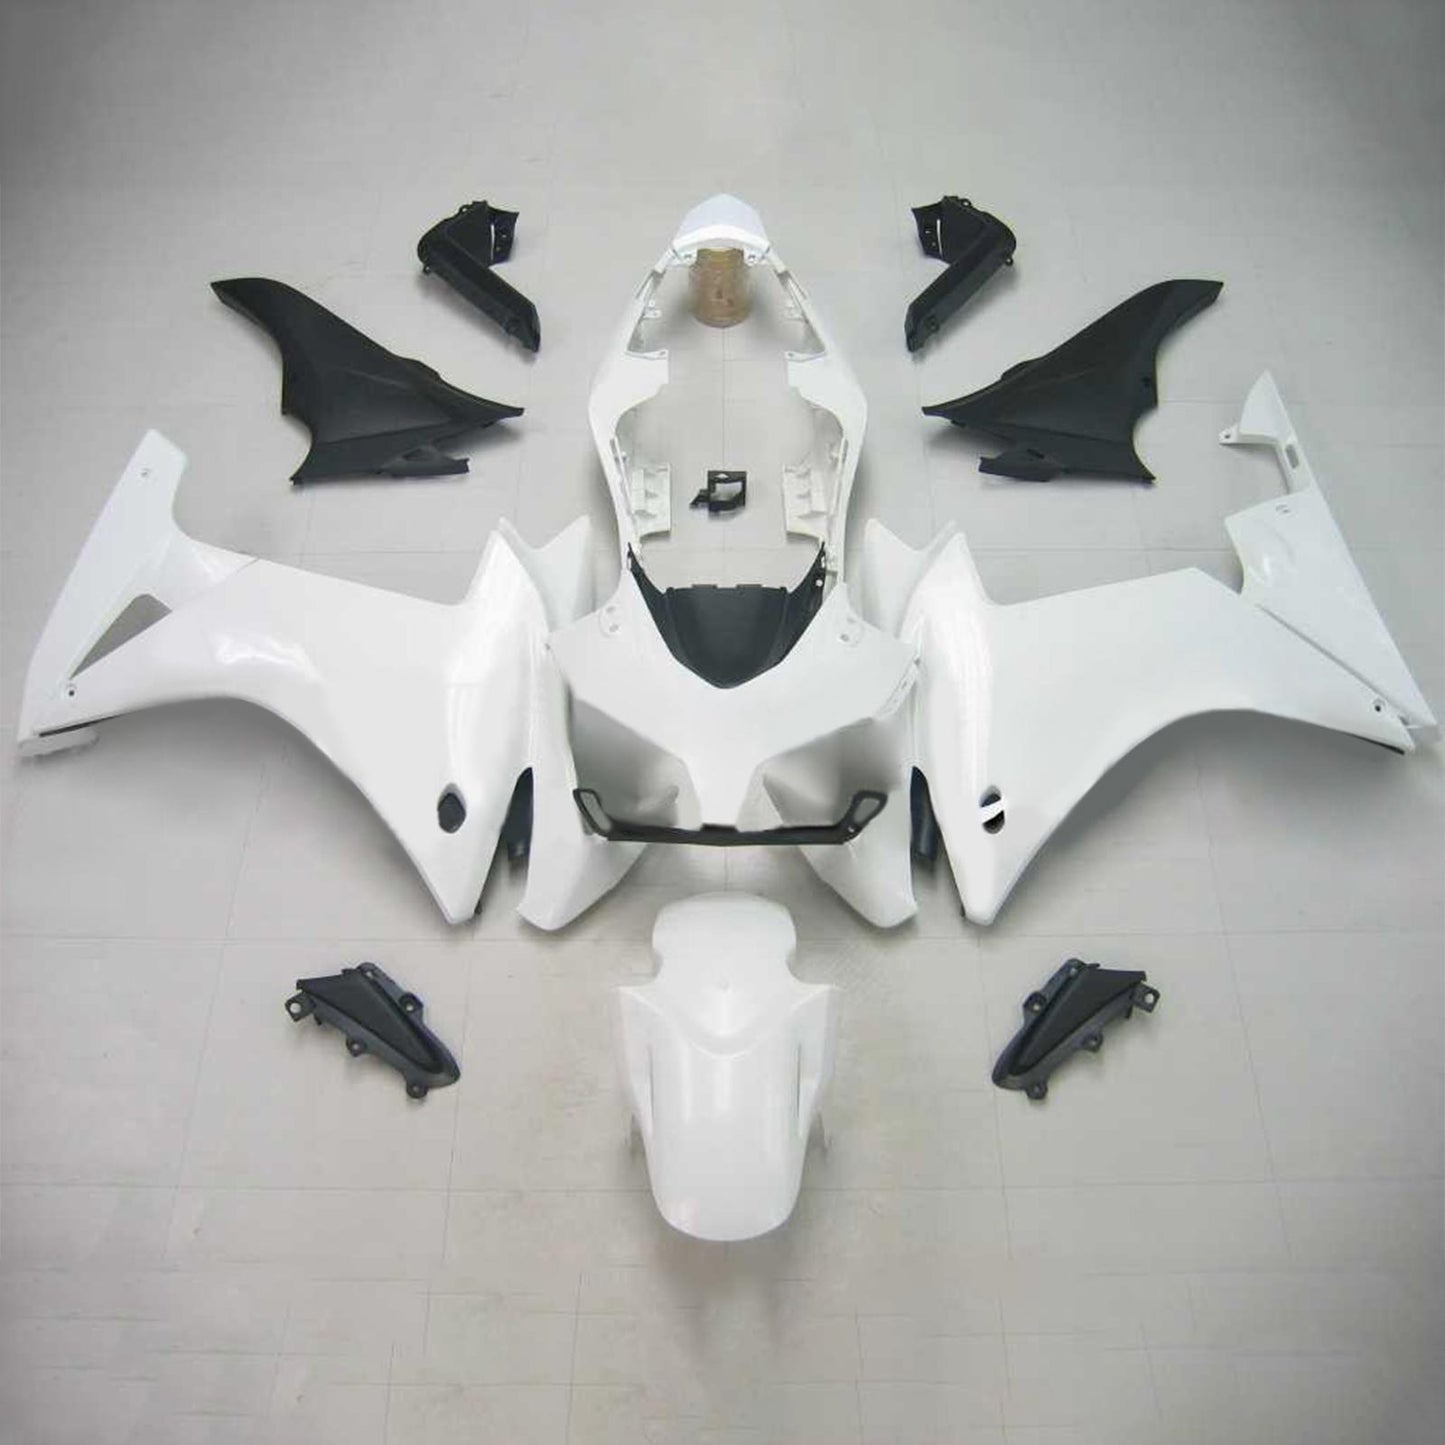 2013-2015 Honda CBR500R Amotopart Injection Fairing Kit Bodywork Plastic ABS #101